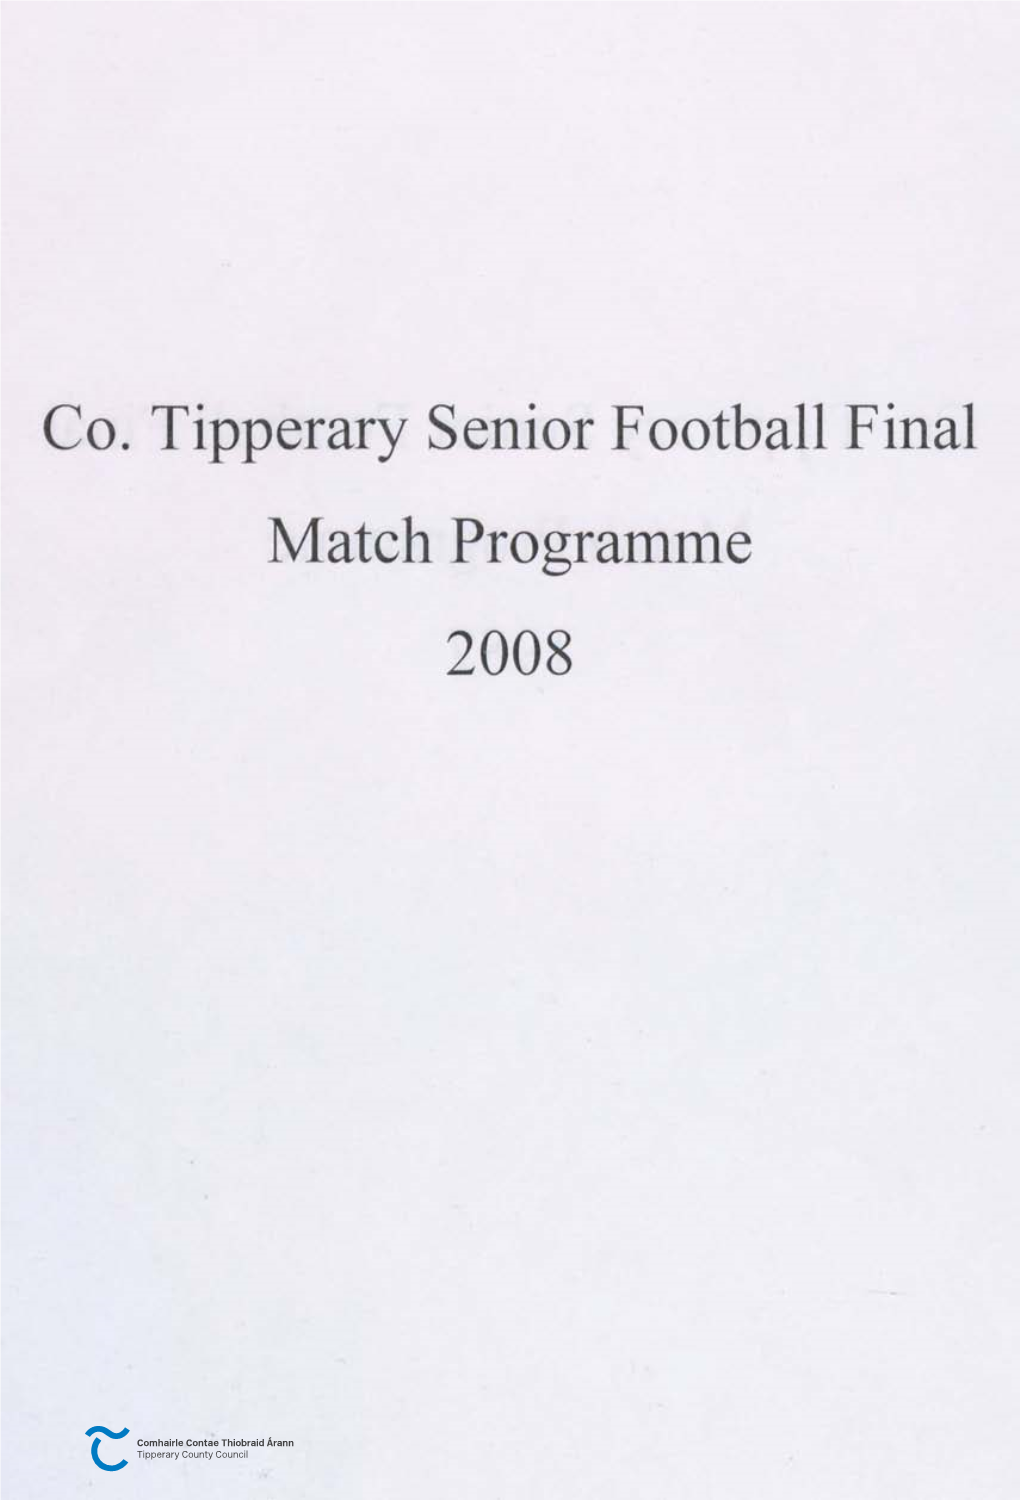 Co. Tipperary Senior Football Final Match Programme 2008